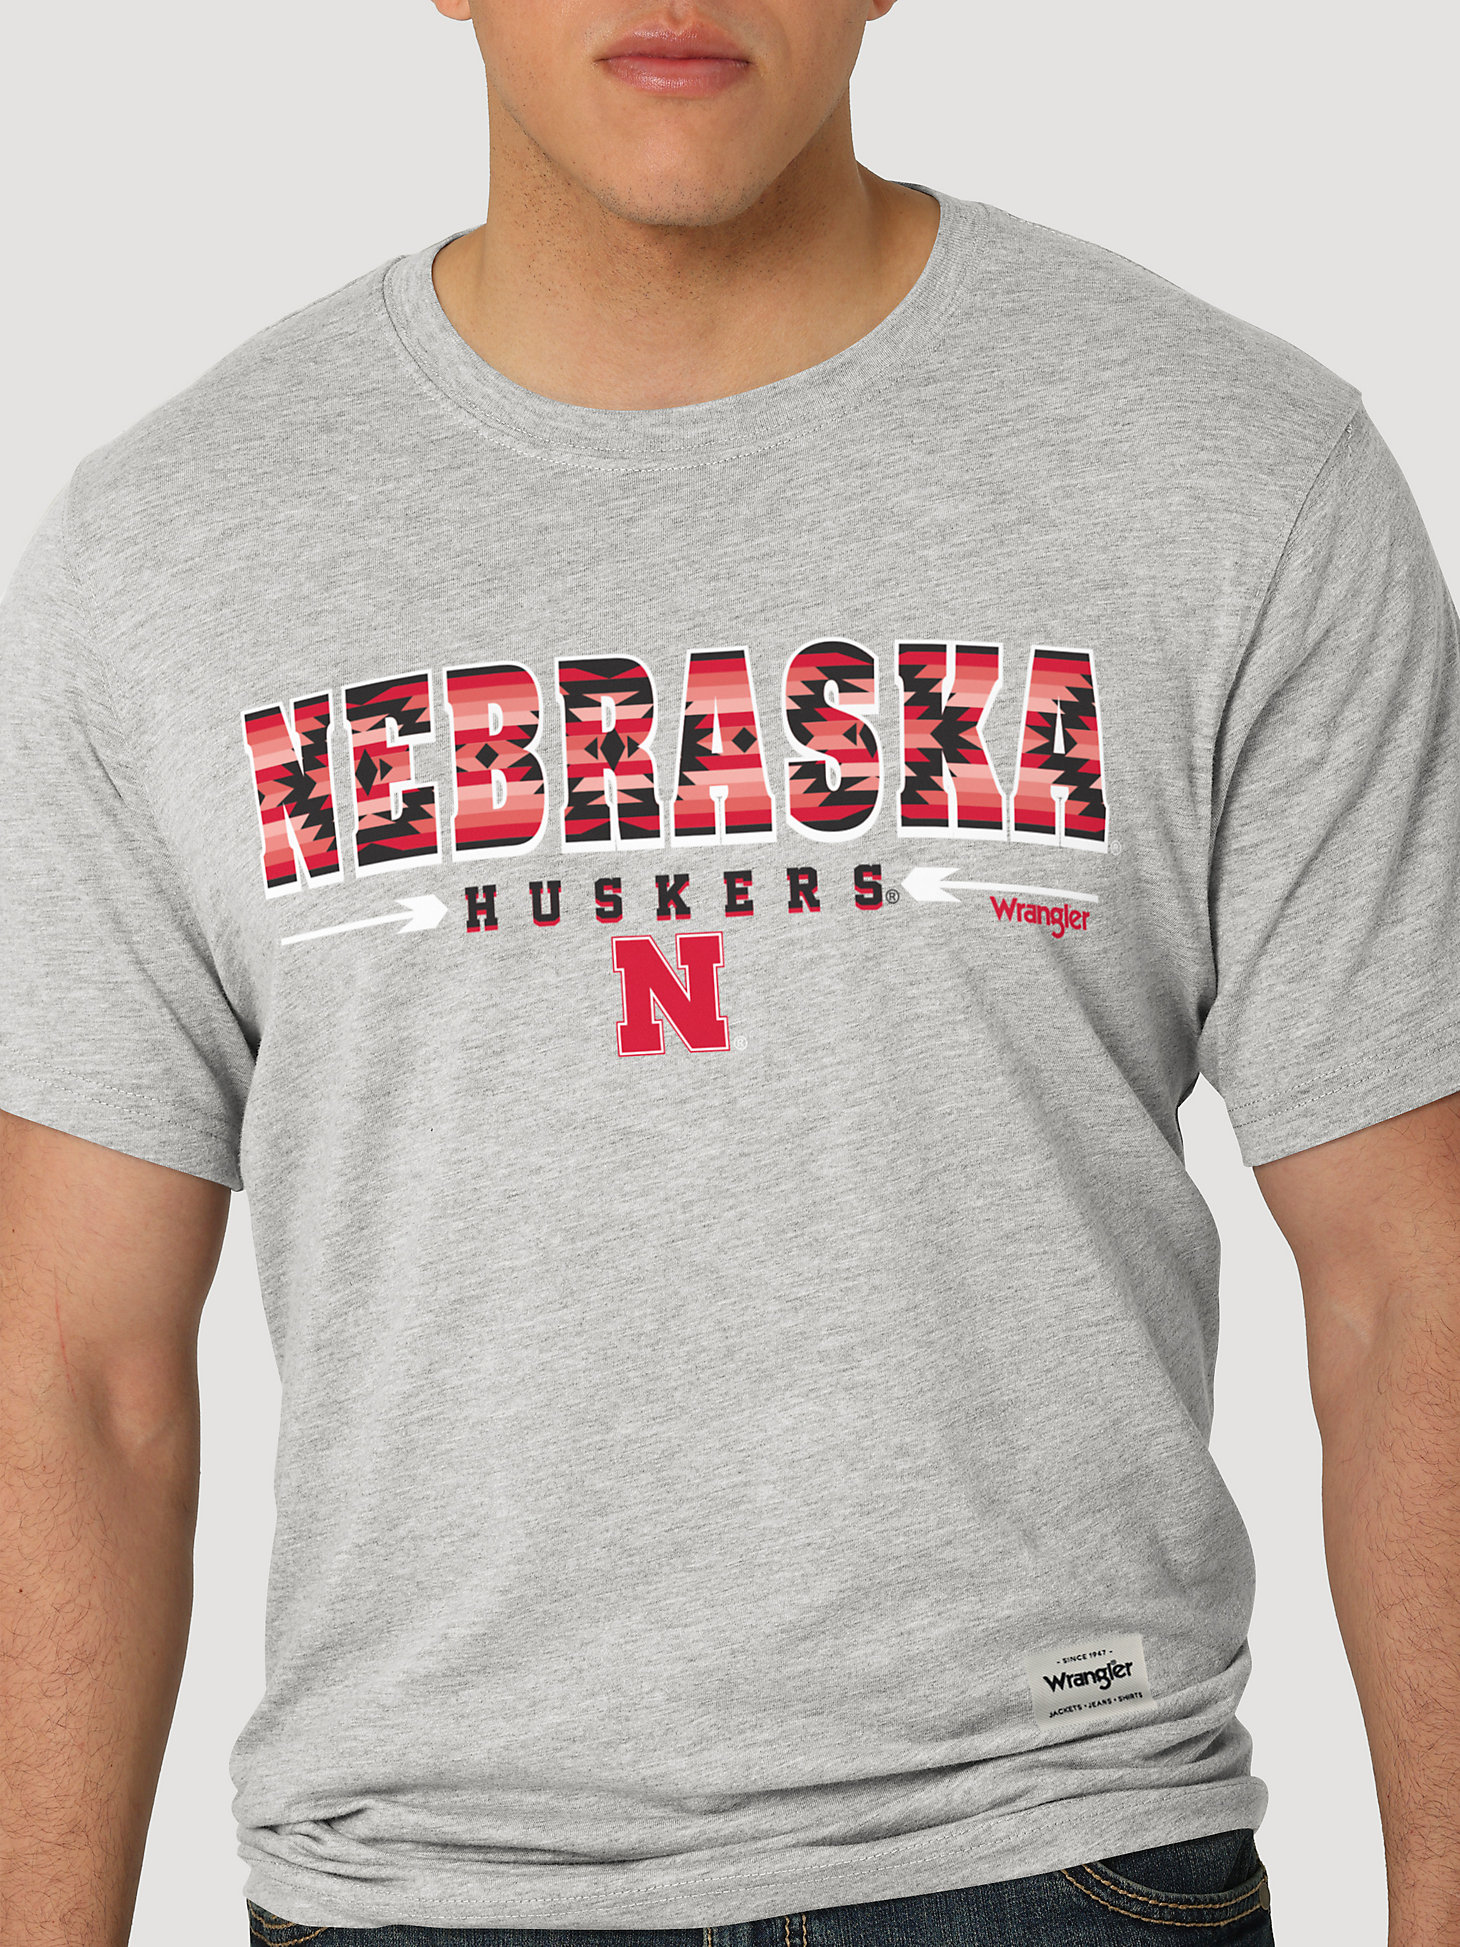 Wrangler Collegiate Sunset Printed Short Sleeve T-Shirt in University of Nebraska alternative view 1